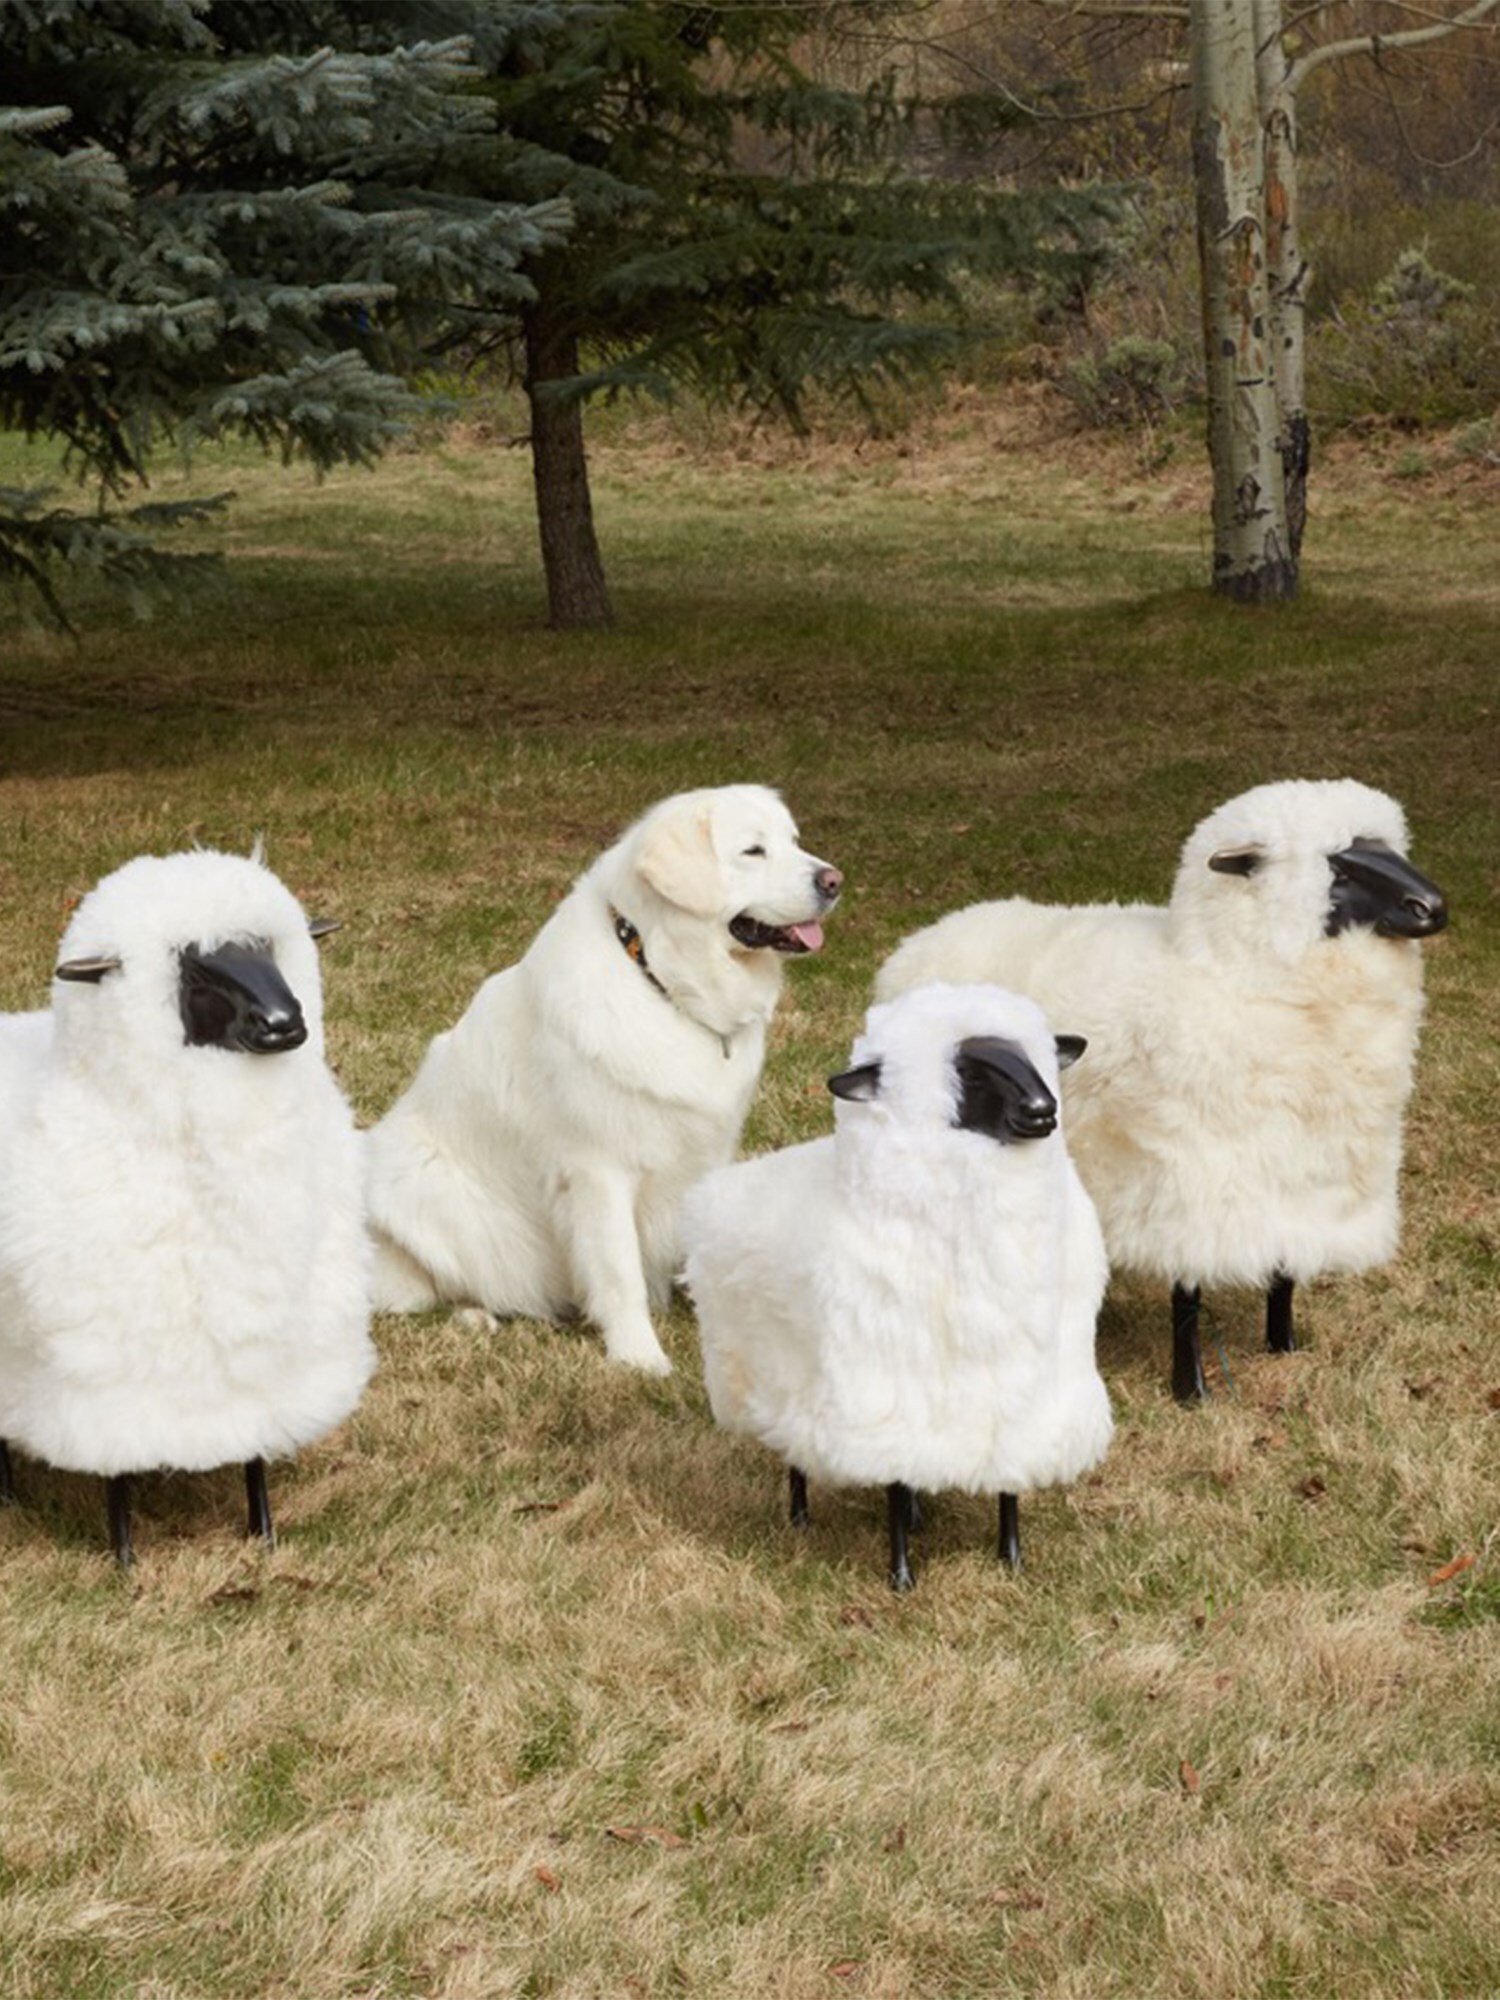 Life-Size Small Lamb Sheep